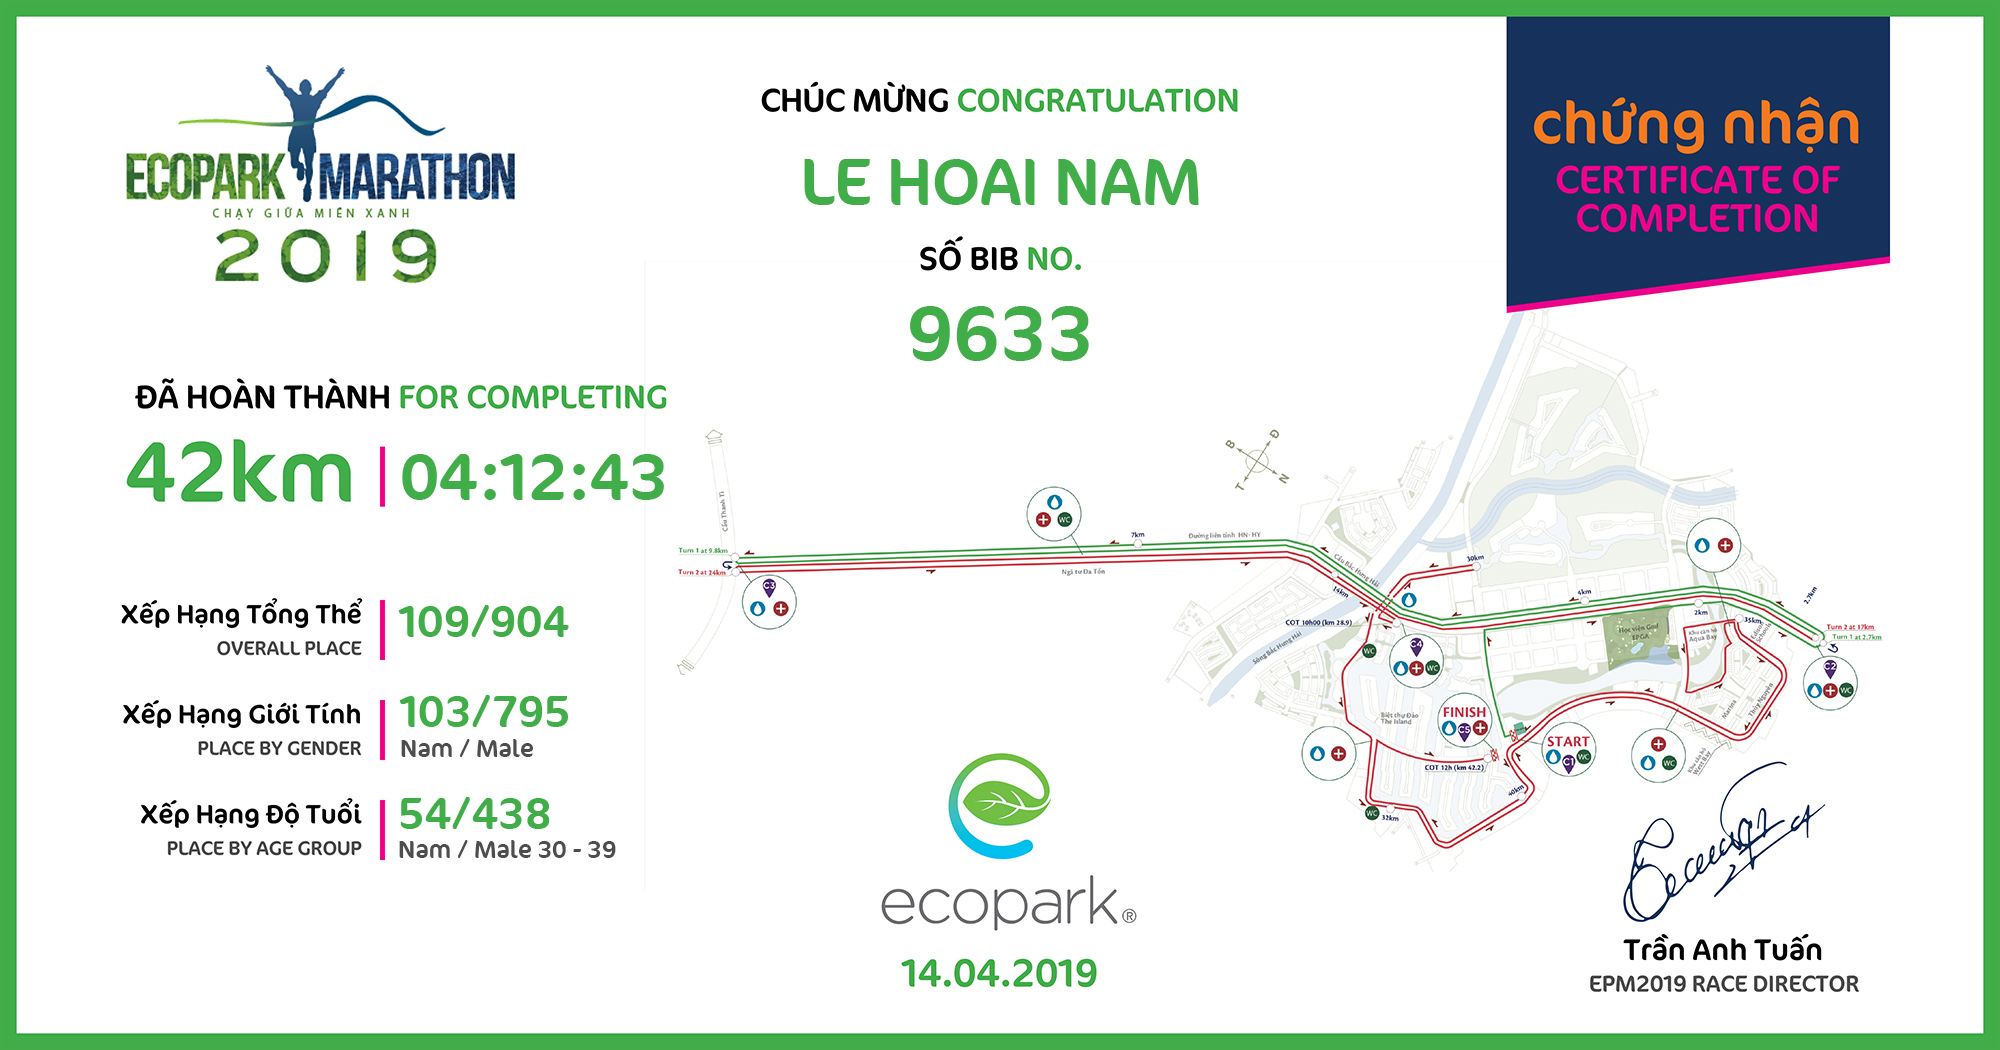 9633 - Le Hoai Nam